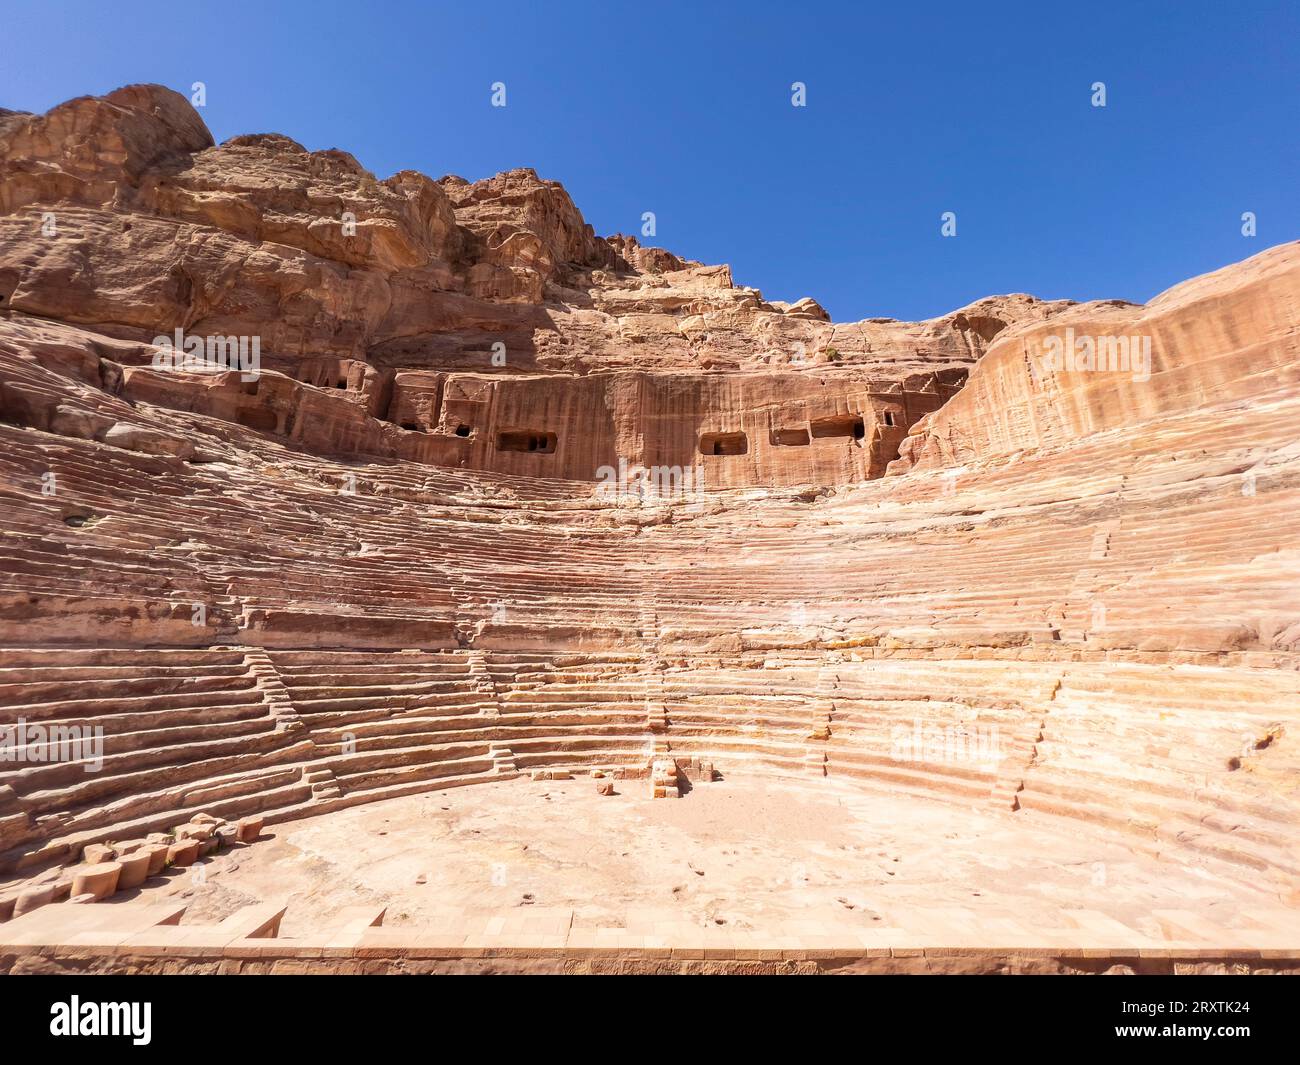 Le théâtre, le parc archéologique de Petra, site du patrimoine mondial de l'UNESCO, l'une des sept nouvelles merveilles du monde, Petra, Jordanie, Moyen-Orient Banque D'Images